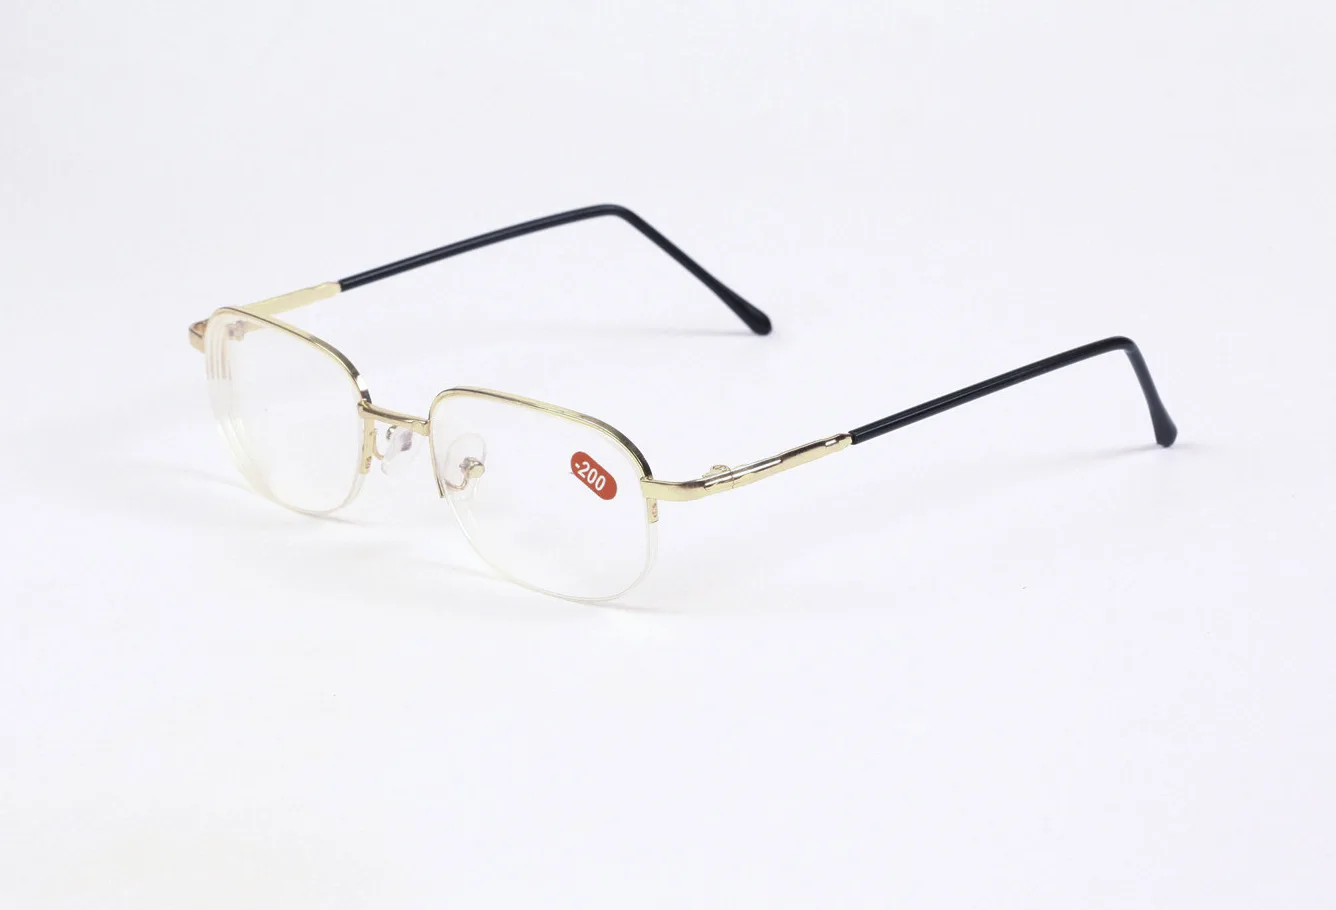 Полуметаллическая оправа в коробке, близорукие очки из смолы, близорукие очки для женщин и мужчин, близорукие очки для близорукости.-1 1,5 2 2,5 3 3,5, 4-4,5~-20